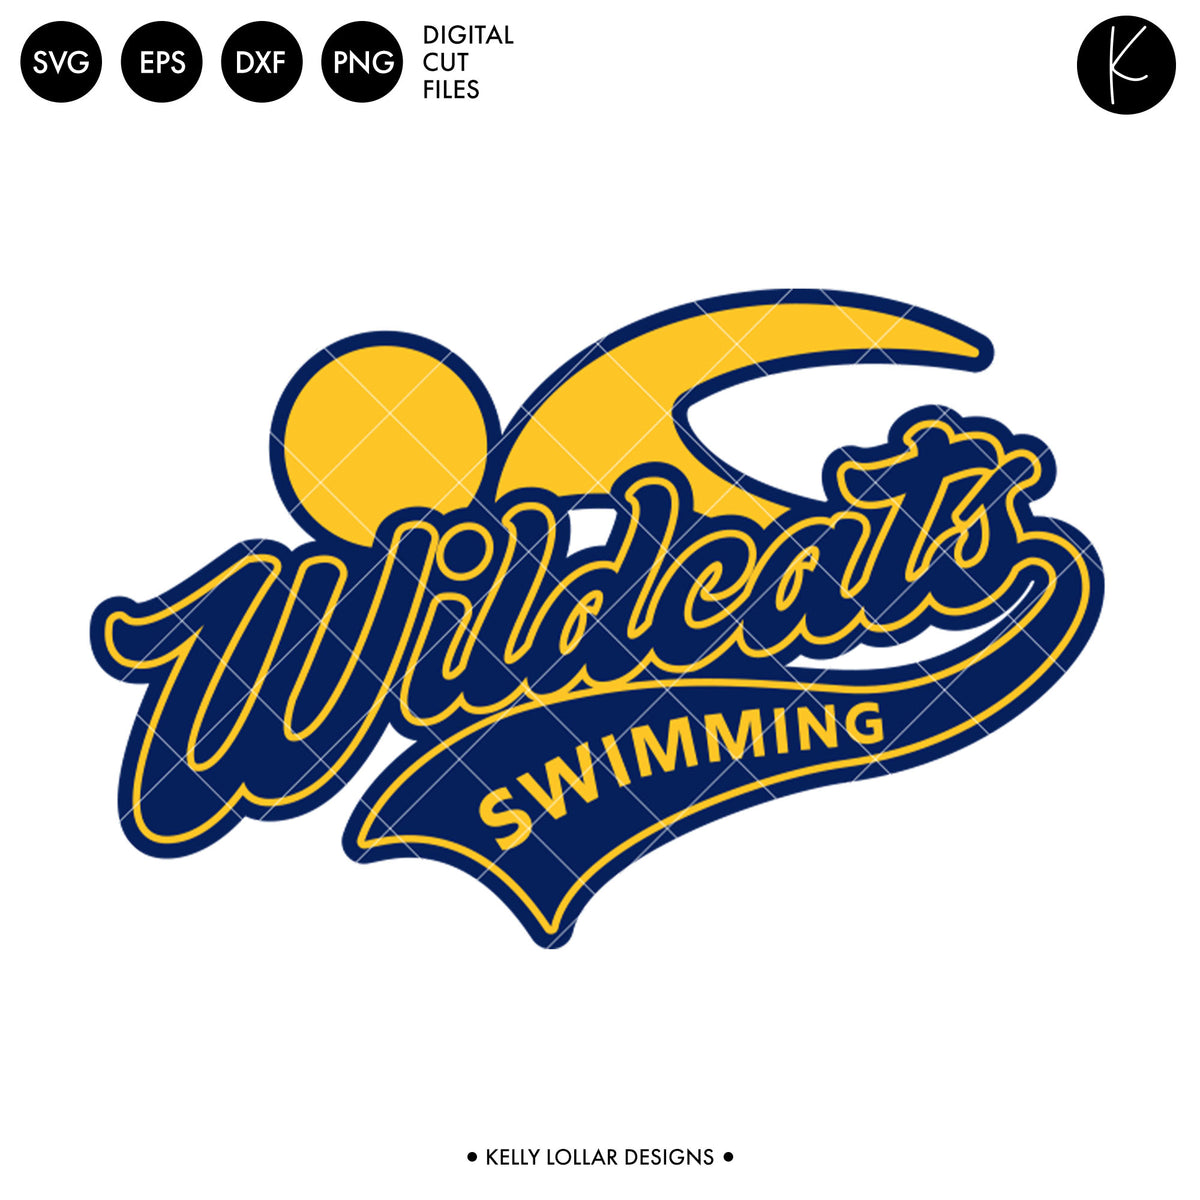 Wildcats Swim Bundle | SVG DXF EPS PNG Cut Files